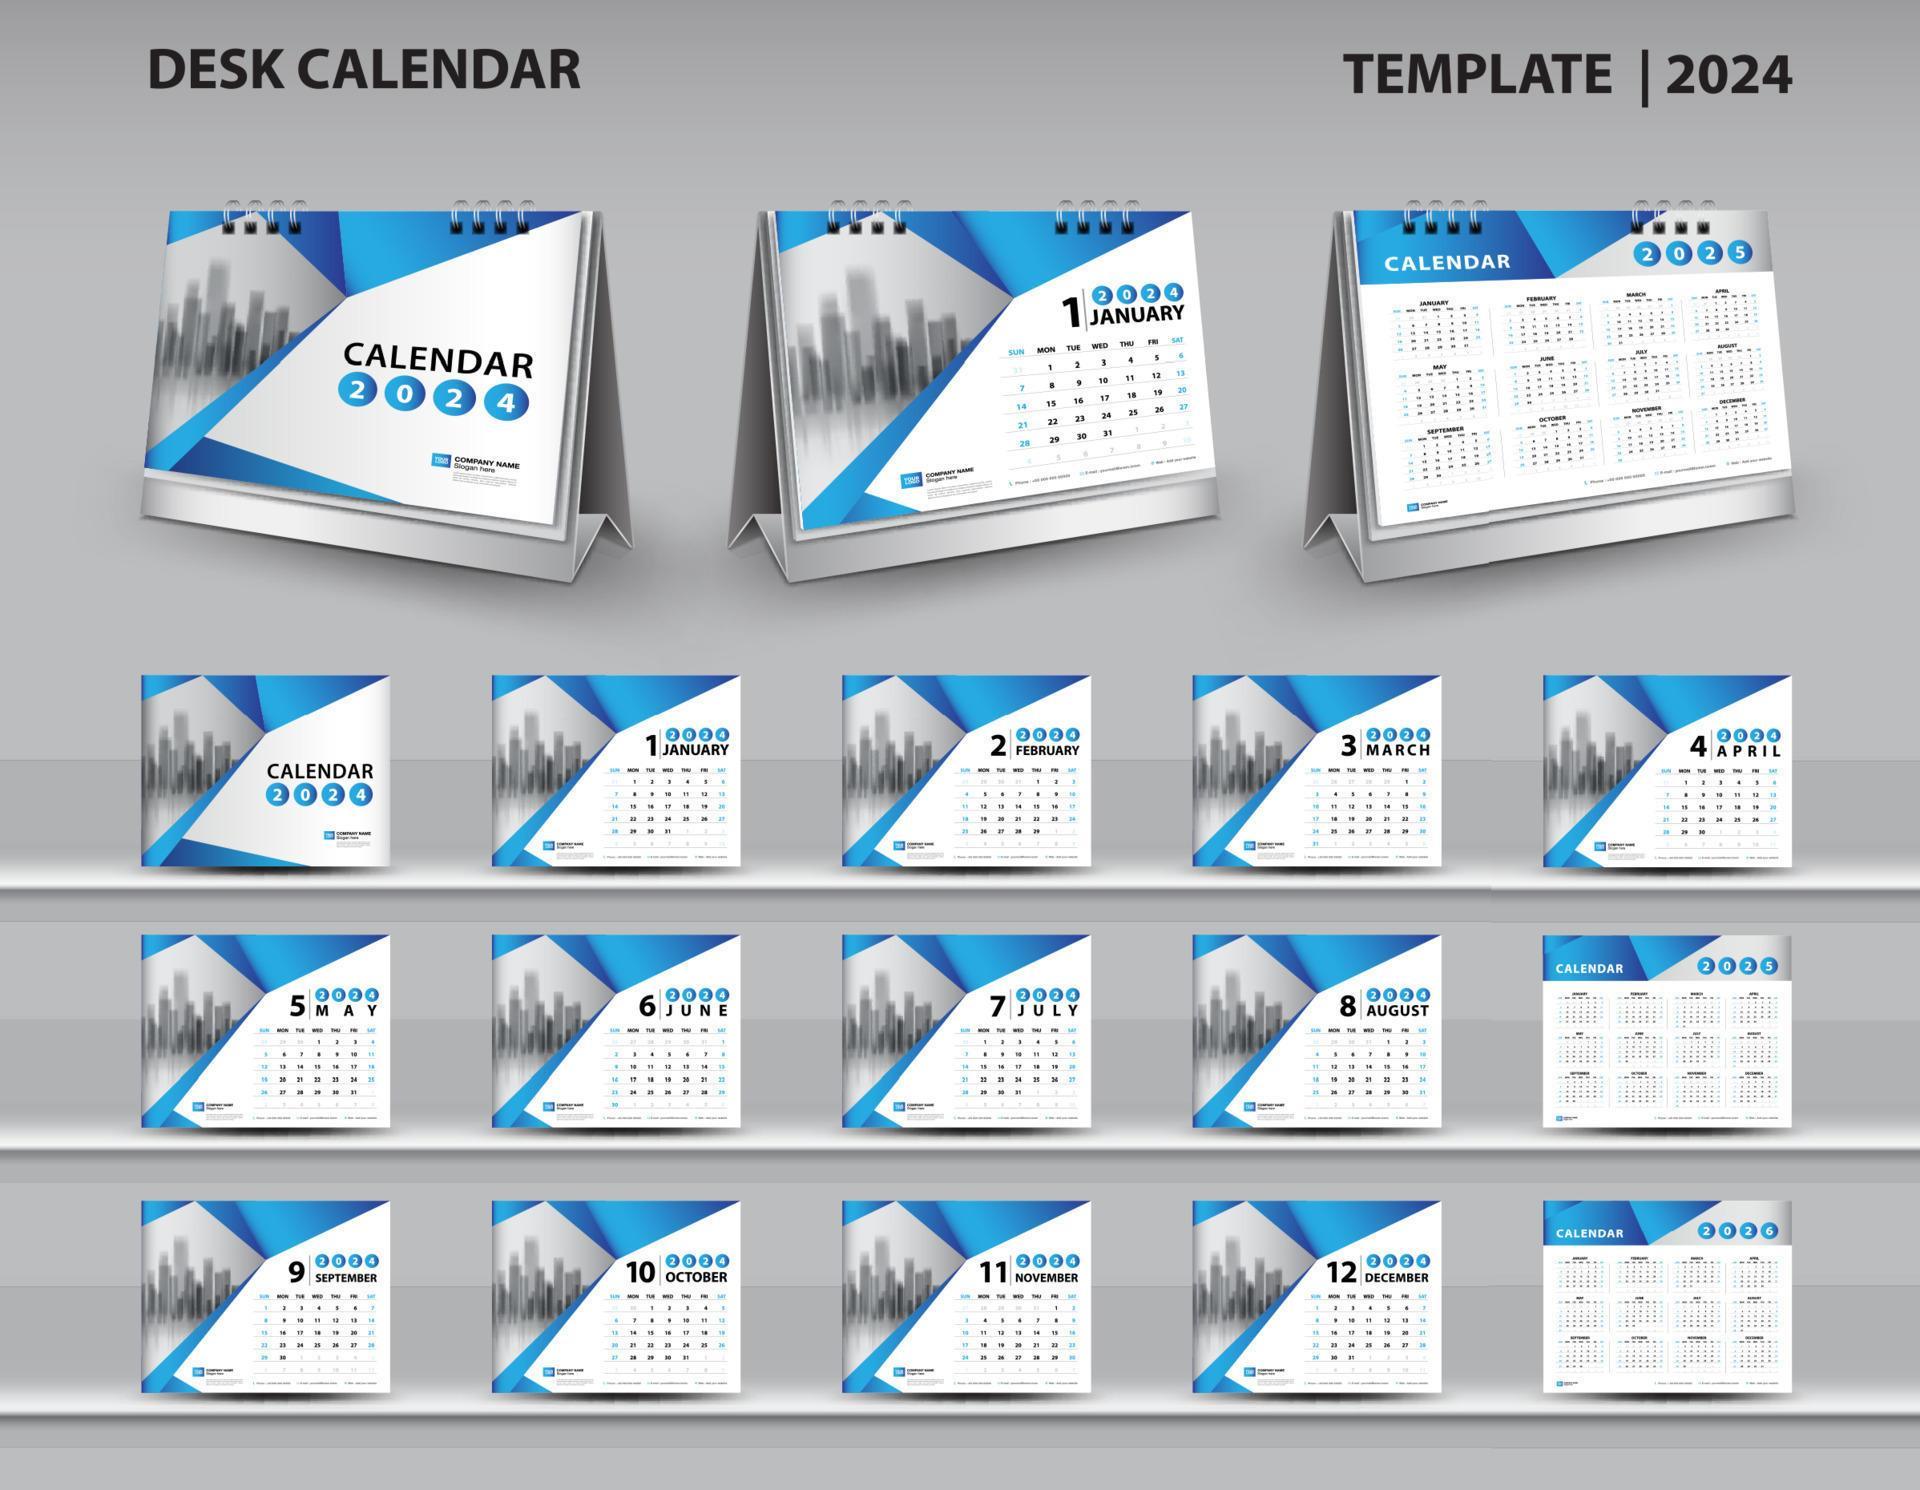 calendar-2024-2025-2026-template-desk-calendar-2024-design-wall